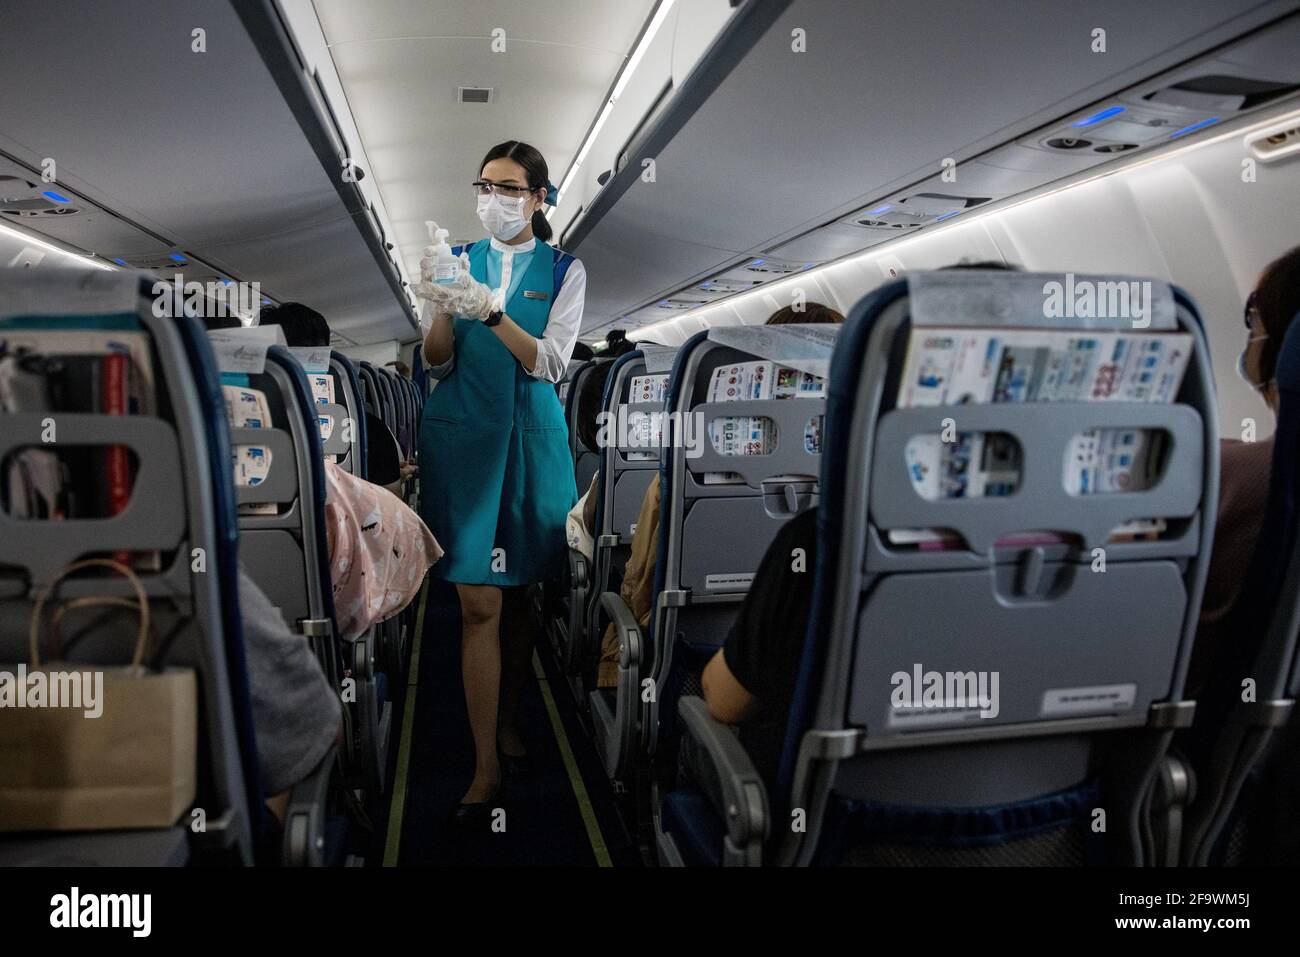 Un membre de l'équipage de cabine de Bangkok Airways, portant un masque facial et des lunettes de protection, offre un désinfectant pour les mains aux passagers à bord d'un vol de l'aéroport Suvarnabhumi de Bangkok à Koh Samui, Thaïlande, le 8 mars 2021, pendant la pandémie mondiale de covid-19. Banque D'Images